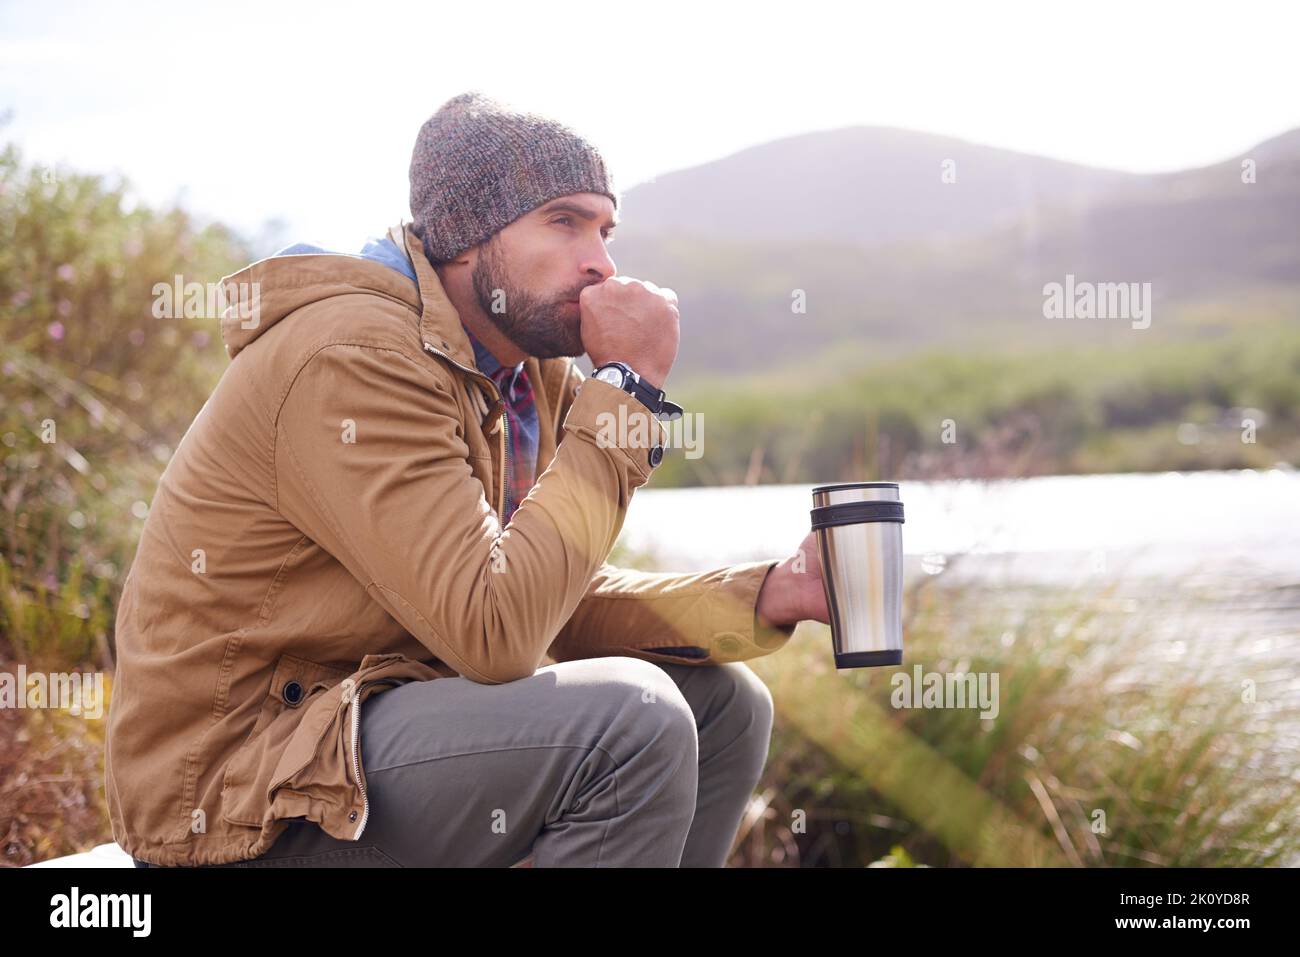 Genießen Sie einen knackigen Morgen am See. Ein hübscher Mann, der mit einer Thermoskanne an einem See sitzt. Stockfoto